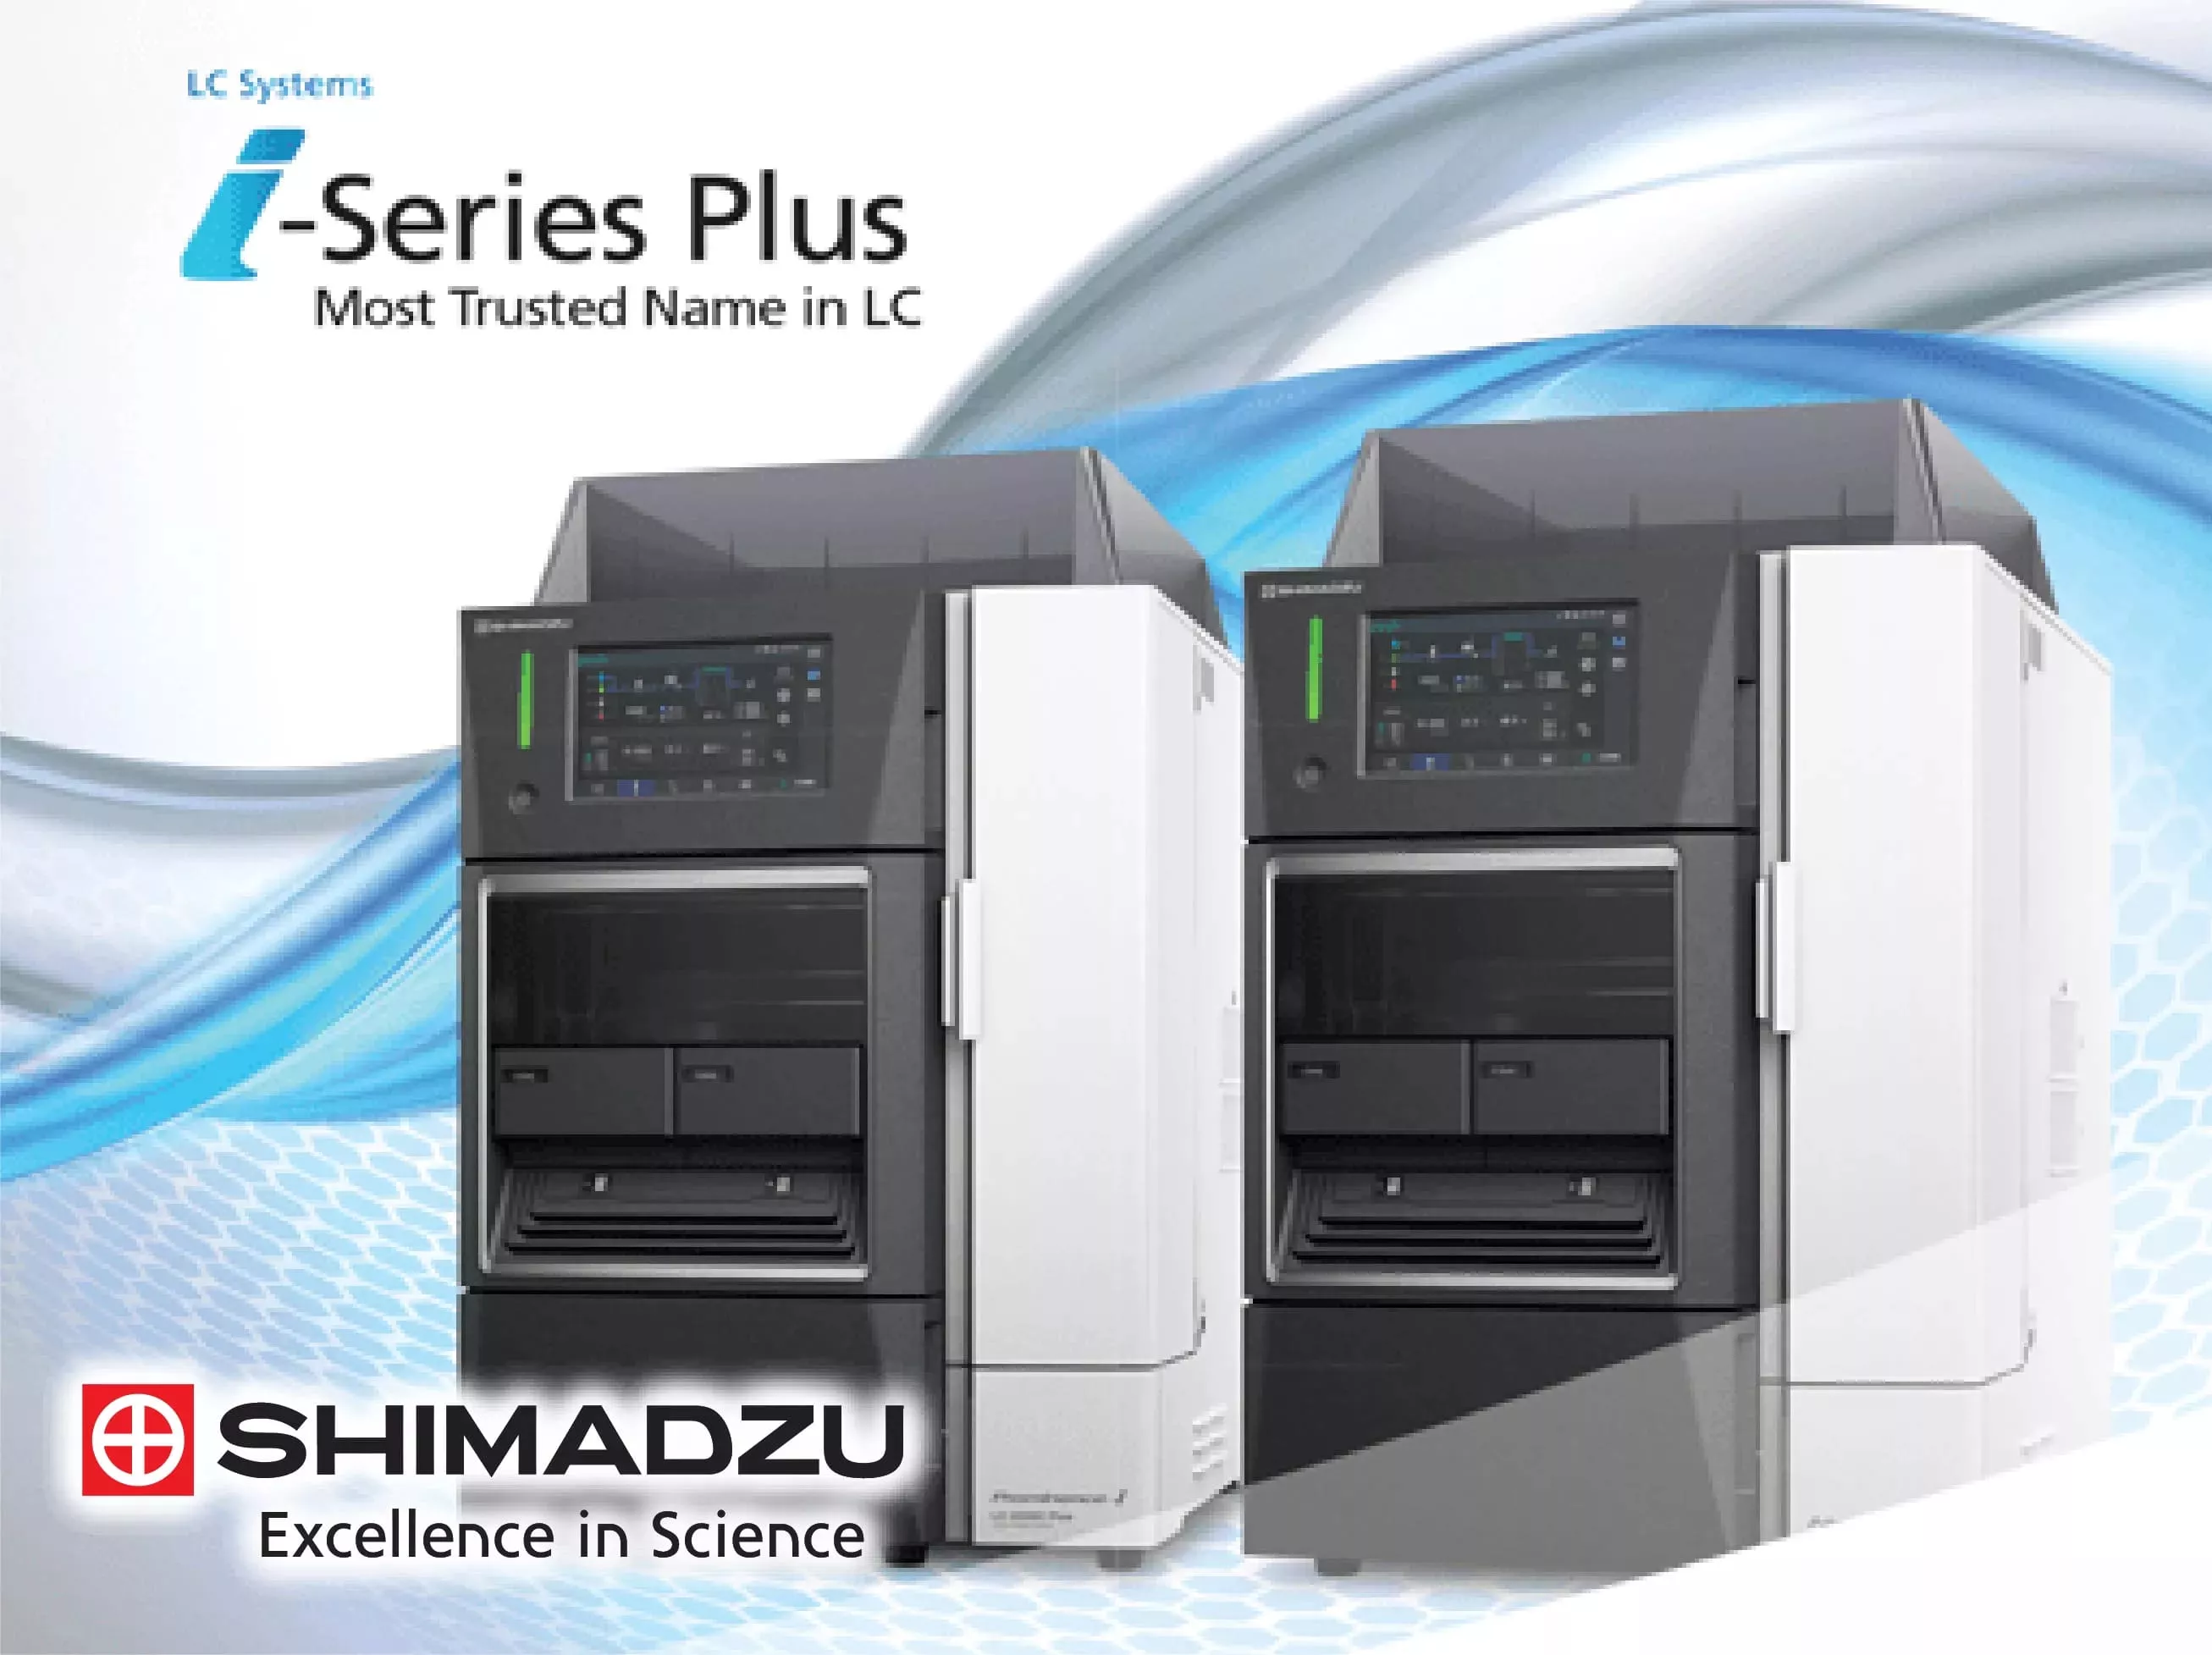 Shimadzu HPLC/UHPLC/SFC Systems